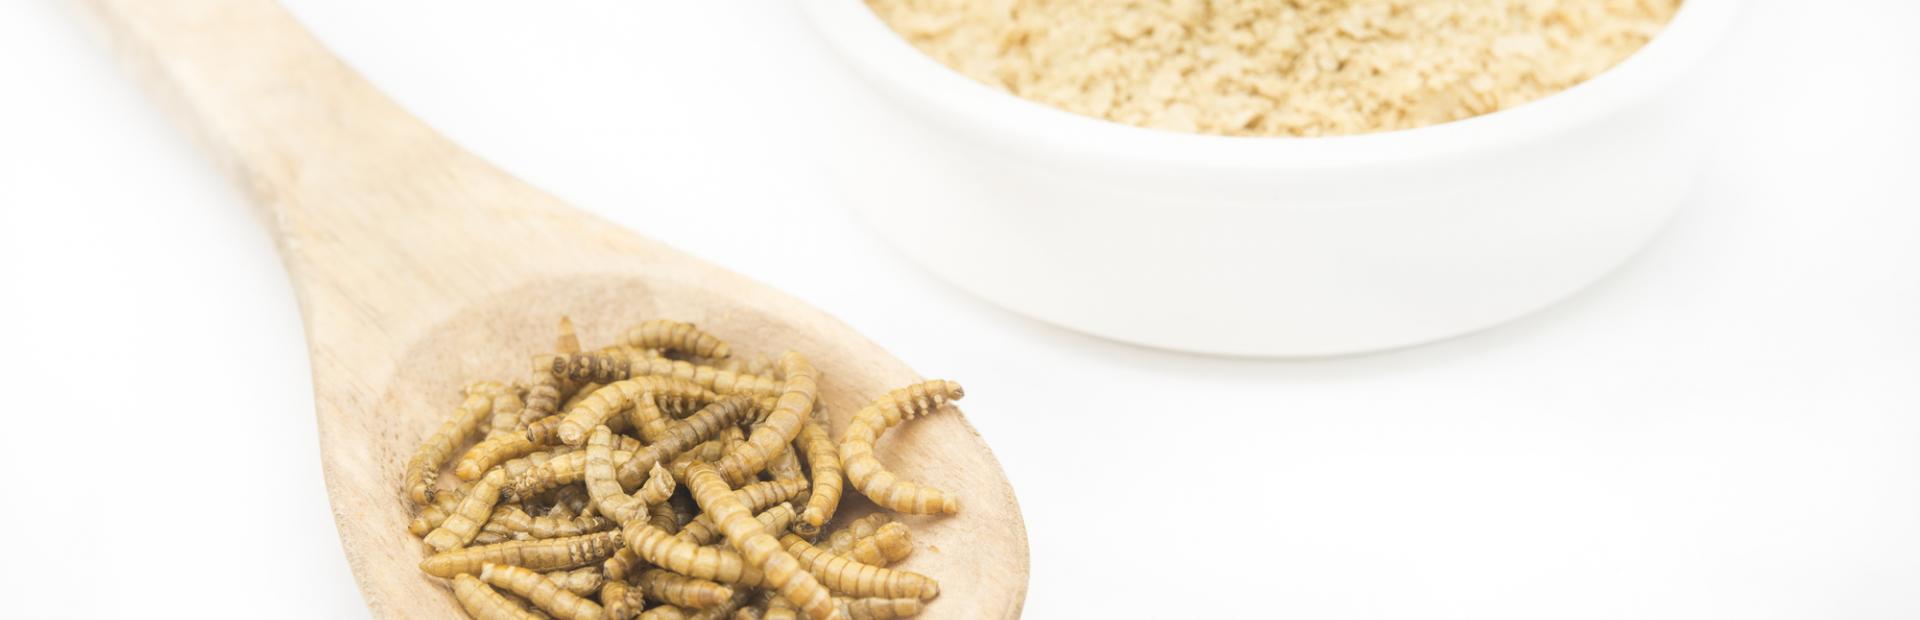 insectos fuente de proteína alternativa